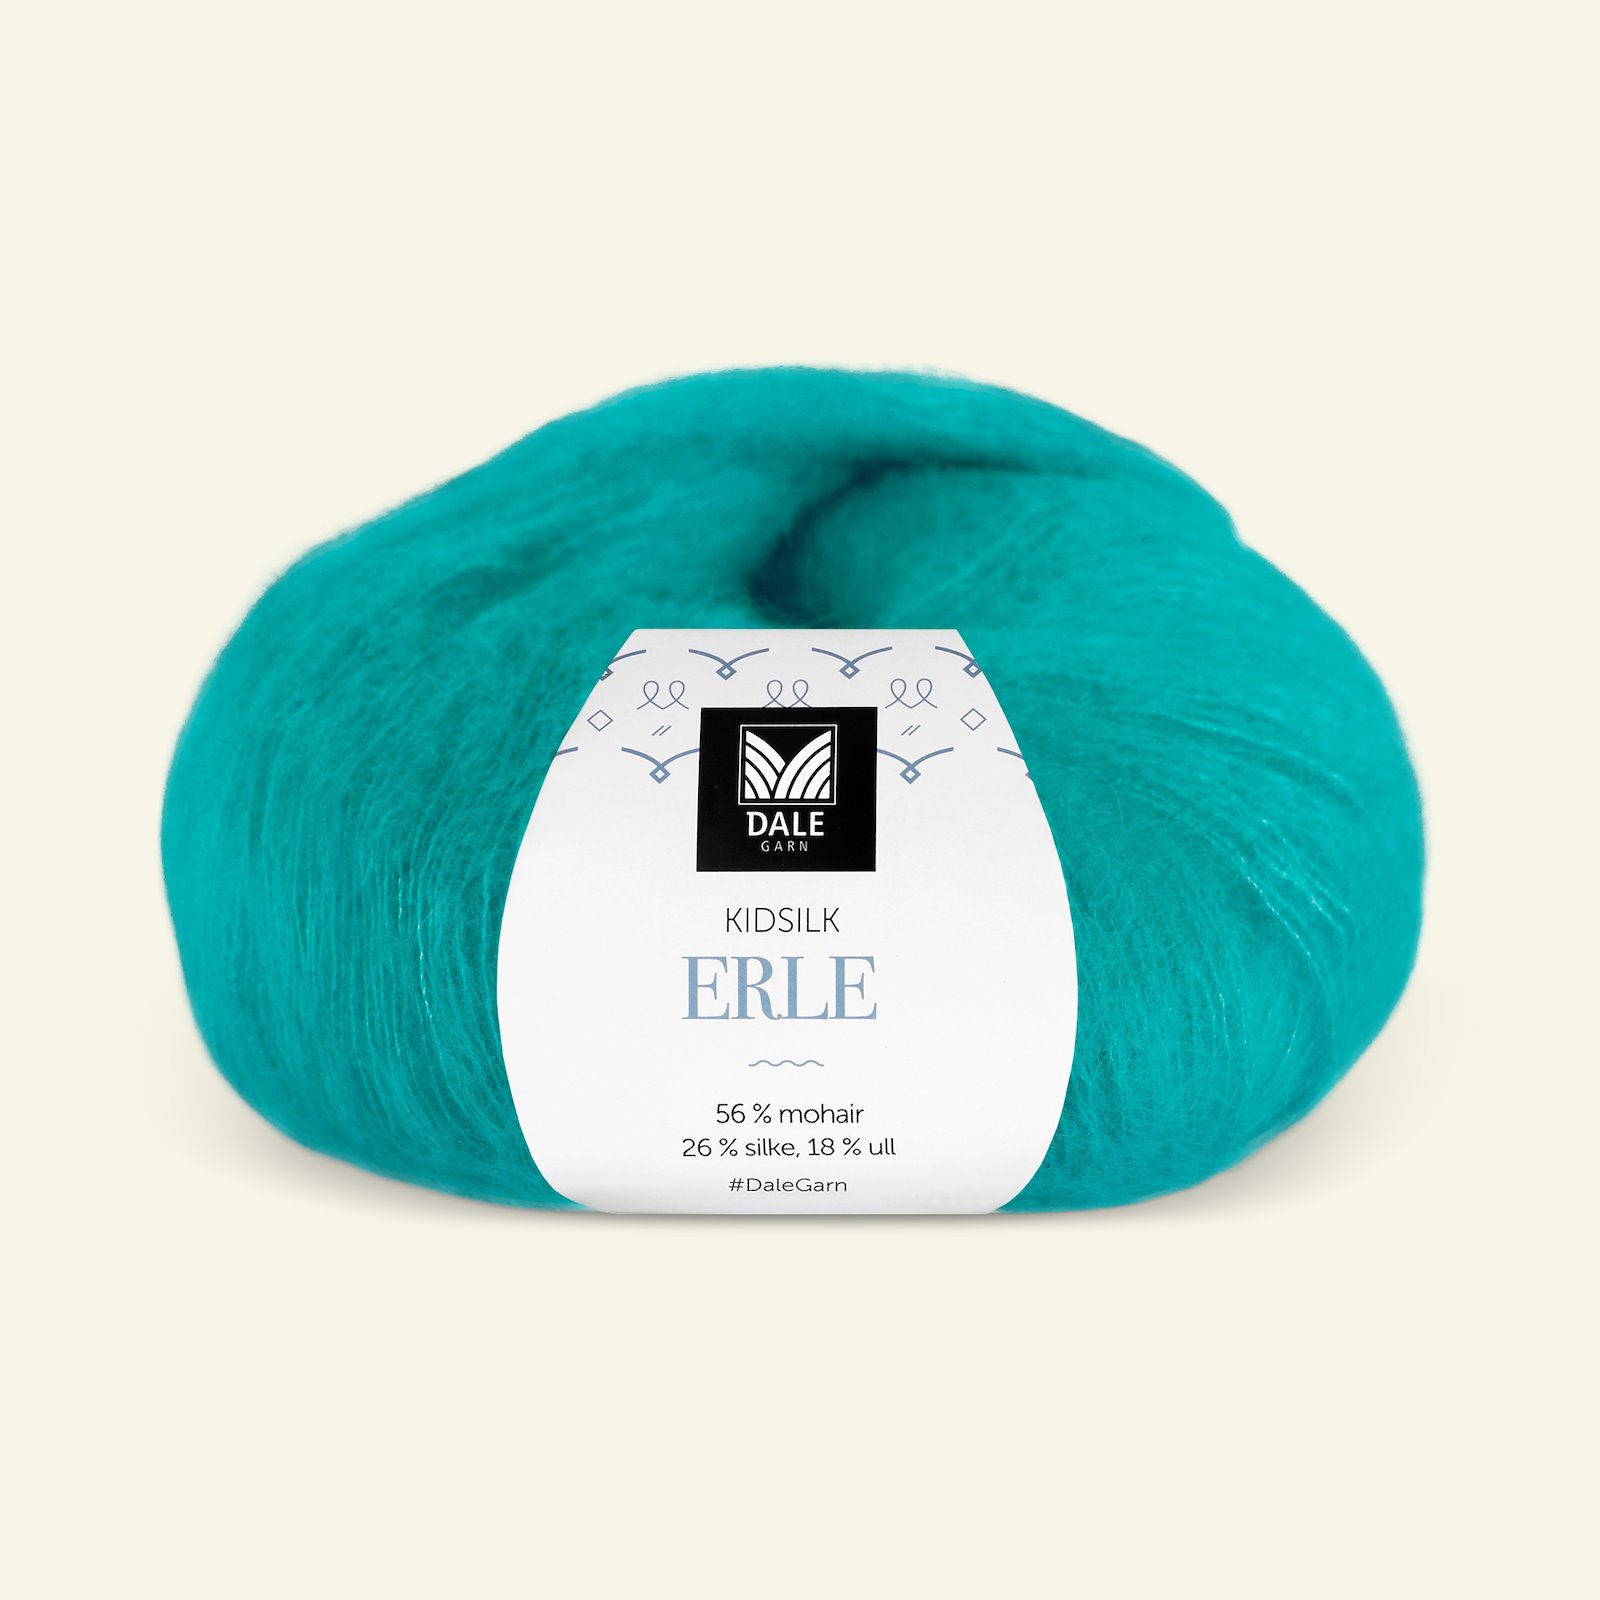 Dale Garn, Seide Mohair Wolle "Kidsilk Erle", tropical blue (9076) 90001204_pack